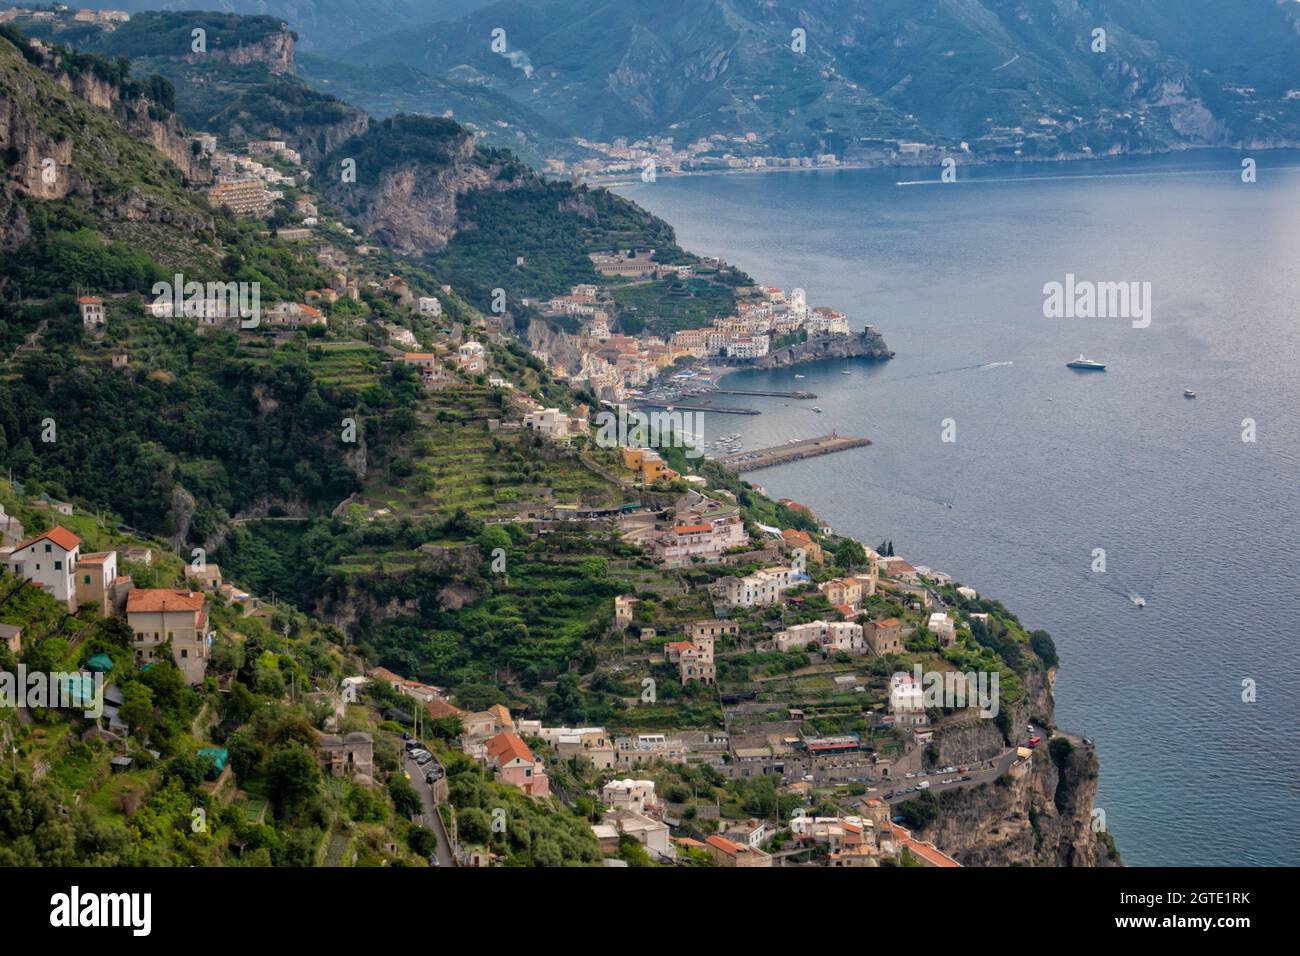 Vue sur la ville d'Amalfi sur la côte amalfitaine, Campanie, Italie Banque D'Images